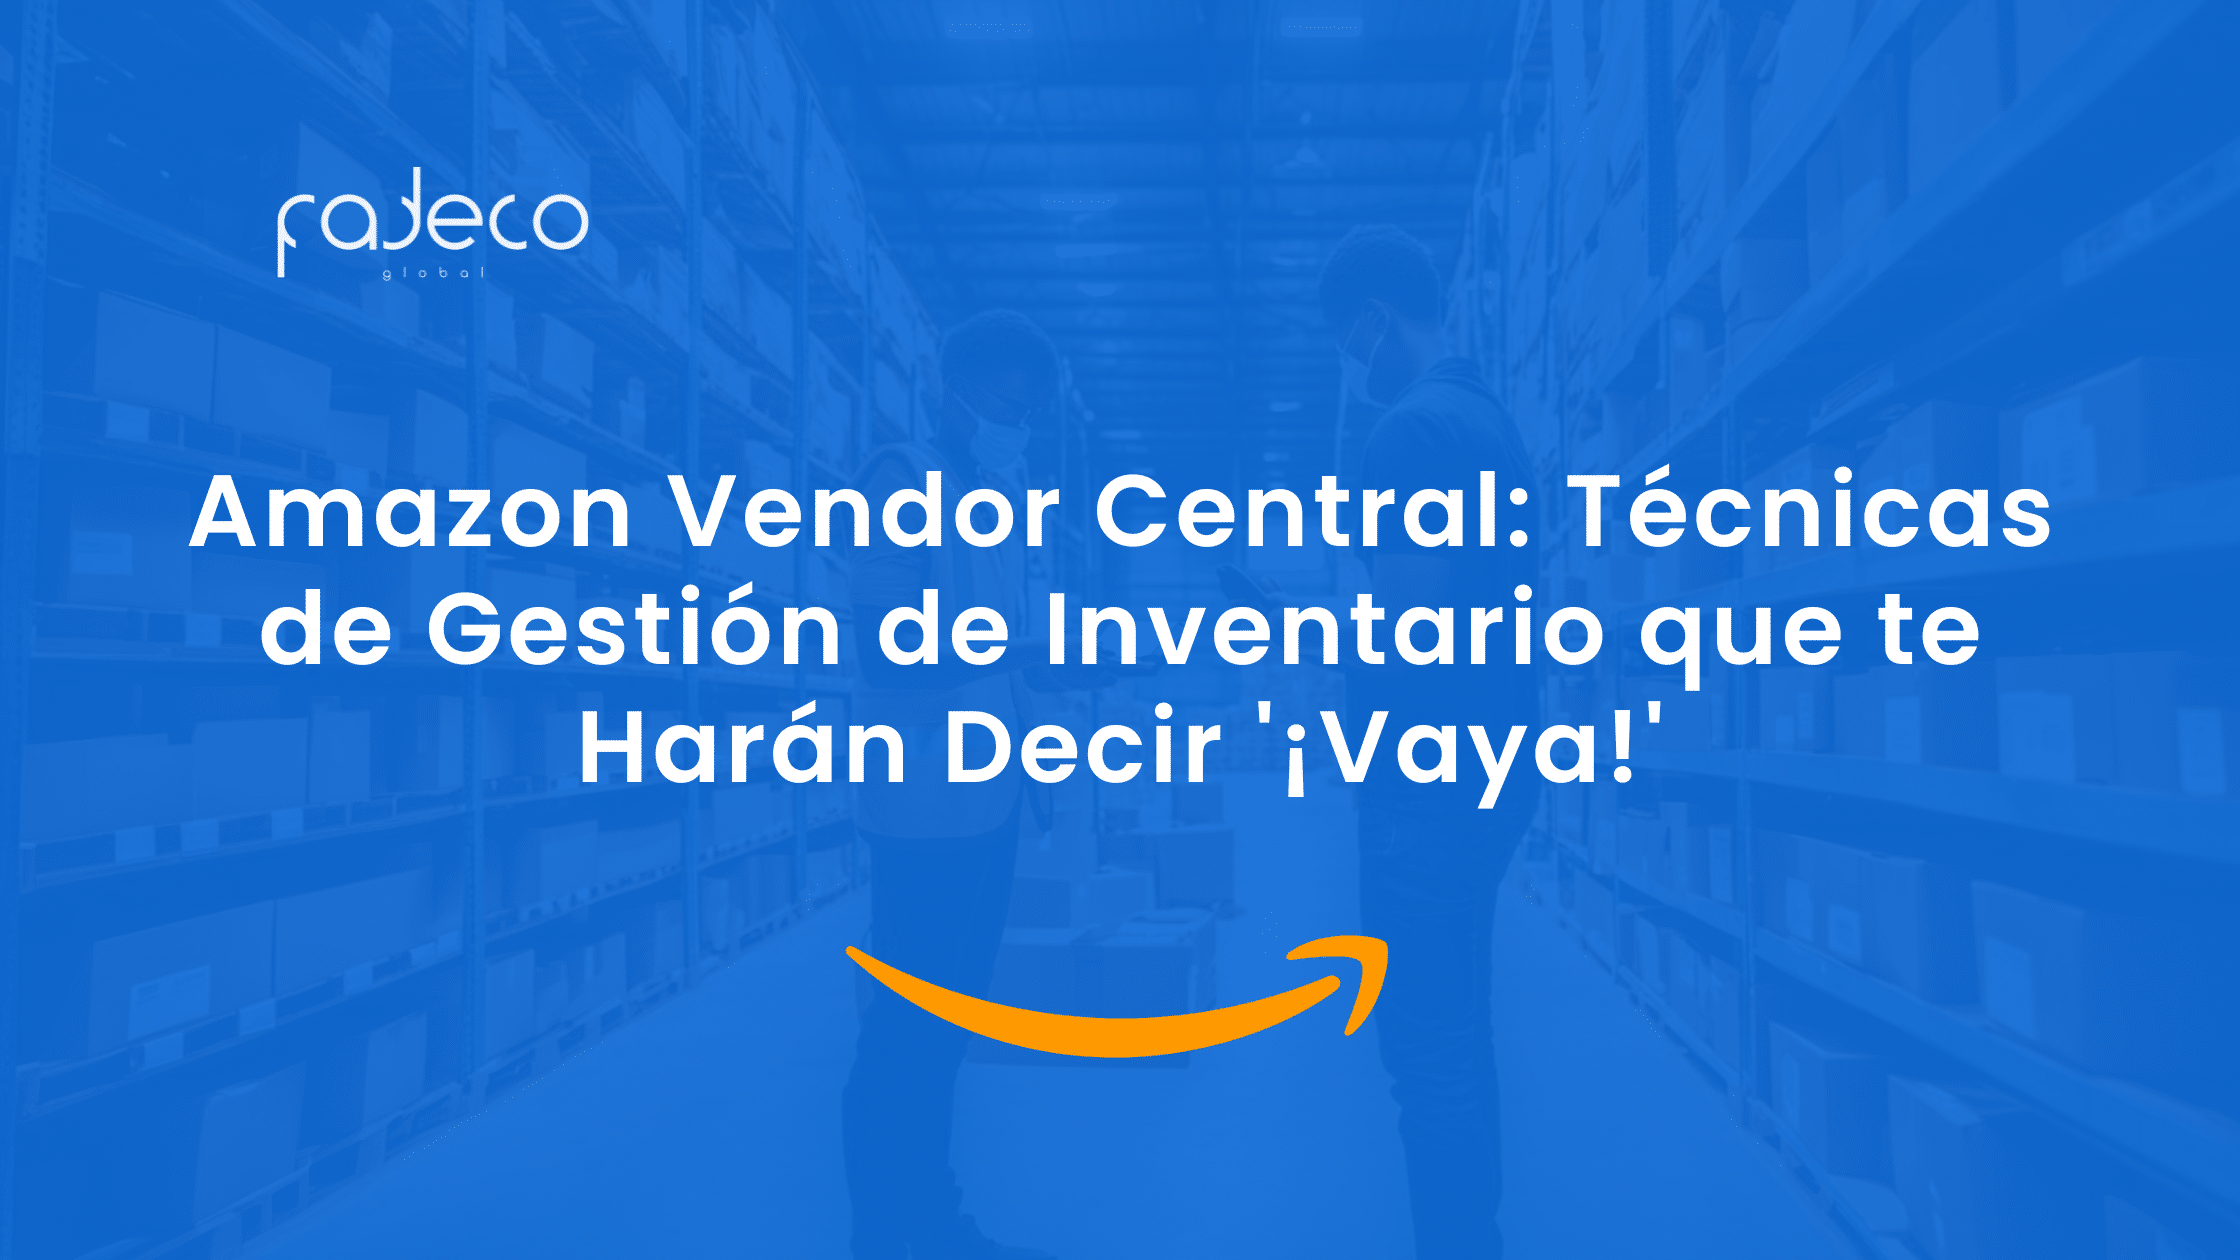 Amazon Vendor Central: Técnicas de Gestión de Inventario que te Harán Decir '¡Vaya!'